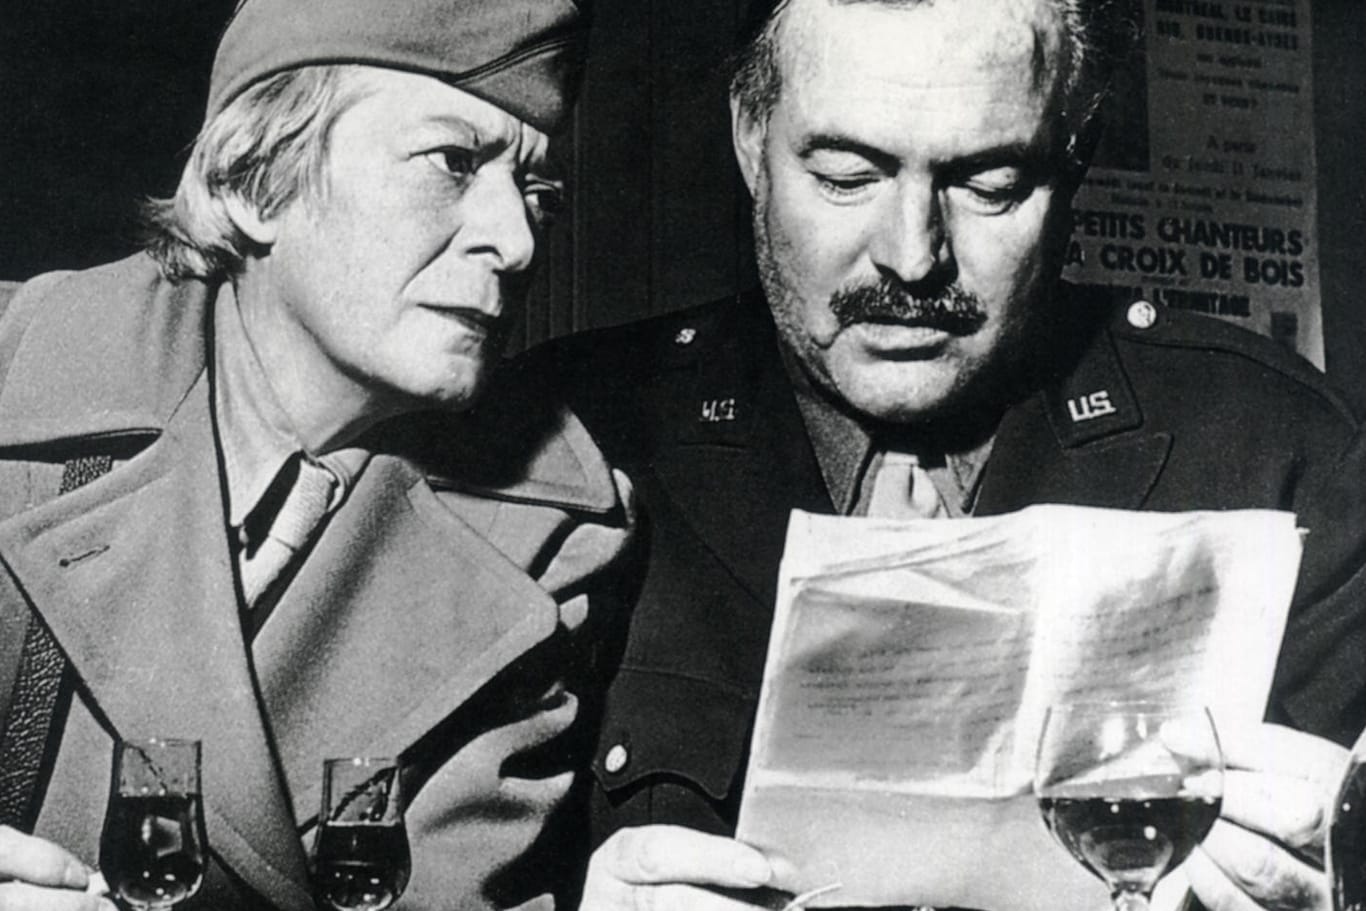 Ernest Hemingway mit der Kriegskorrespondentin Janet Flanner, beide in Uniform, 1944 in Paris: Hemingway wollte dort sein geliebtes Ritz befreien.